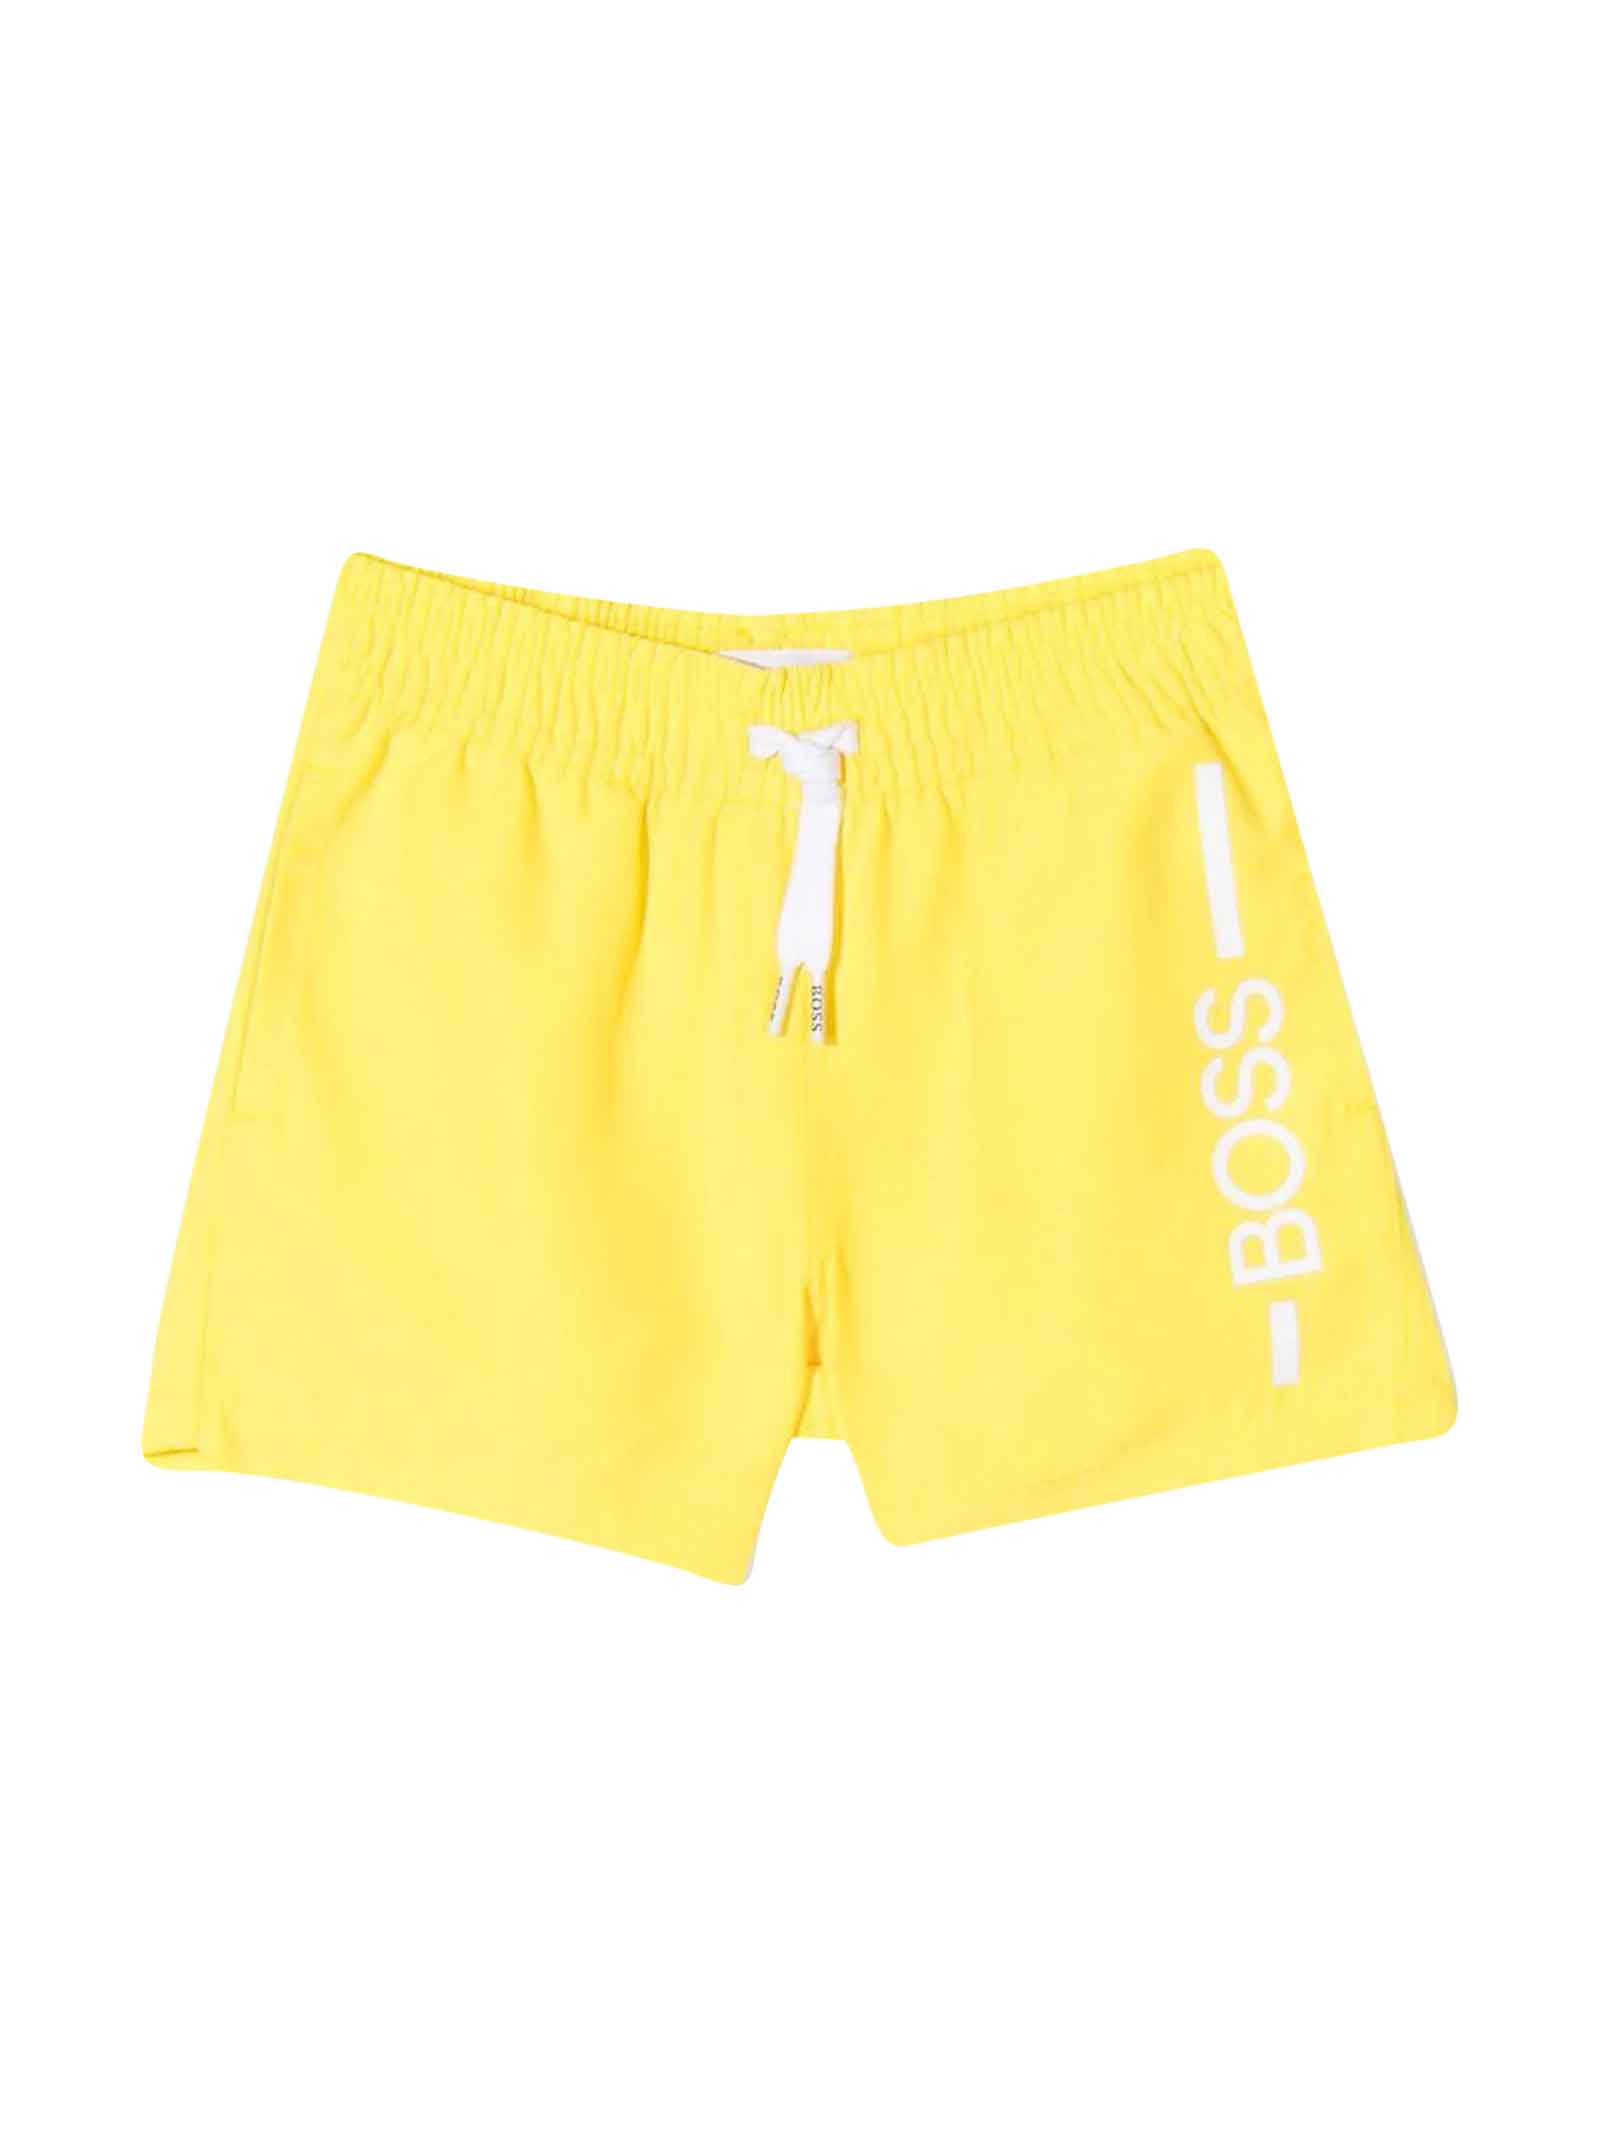 Hugo Boss Yellow Baby Boy Swimsuit